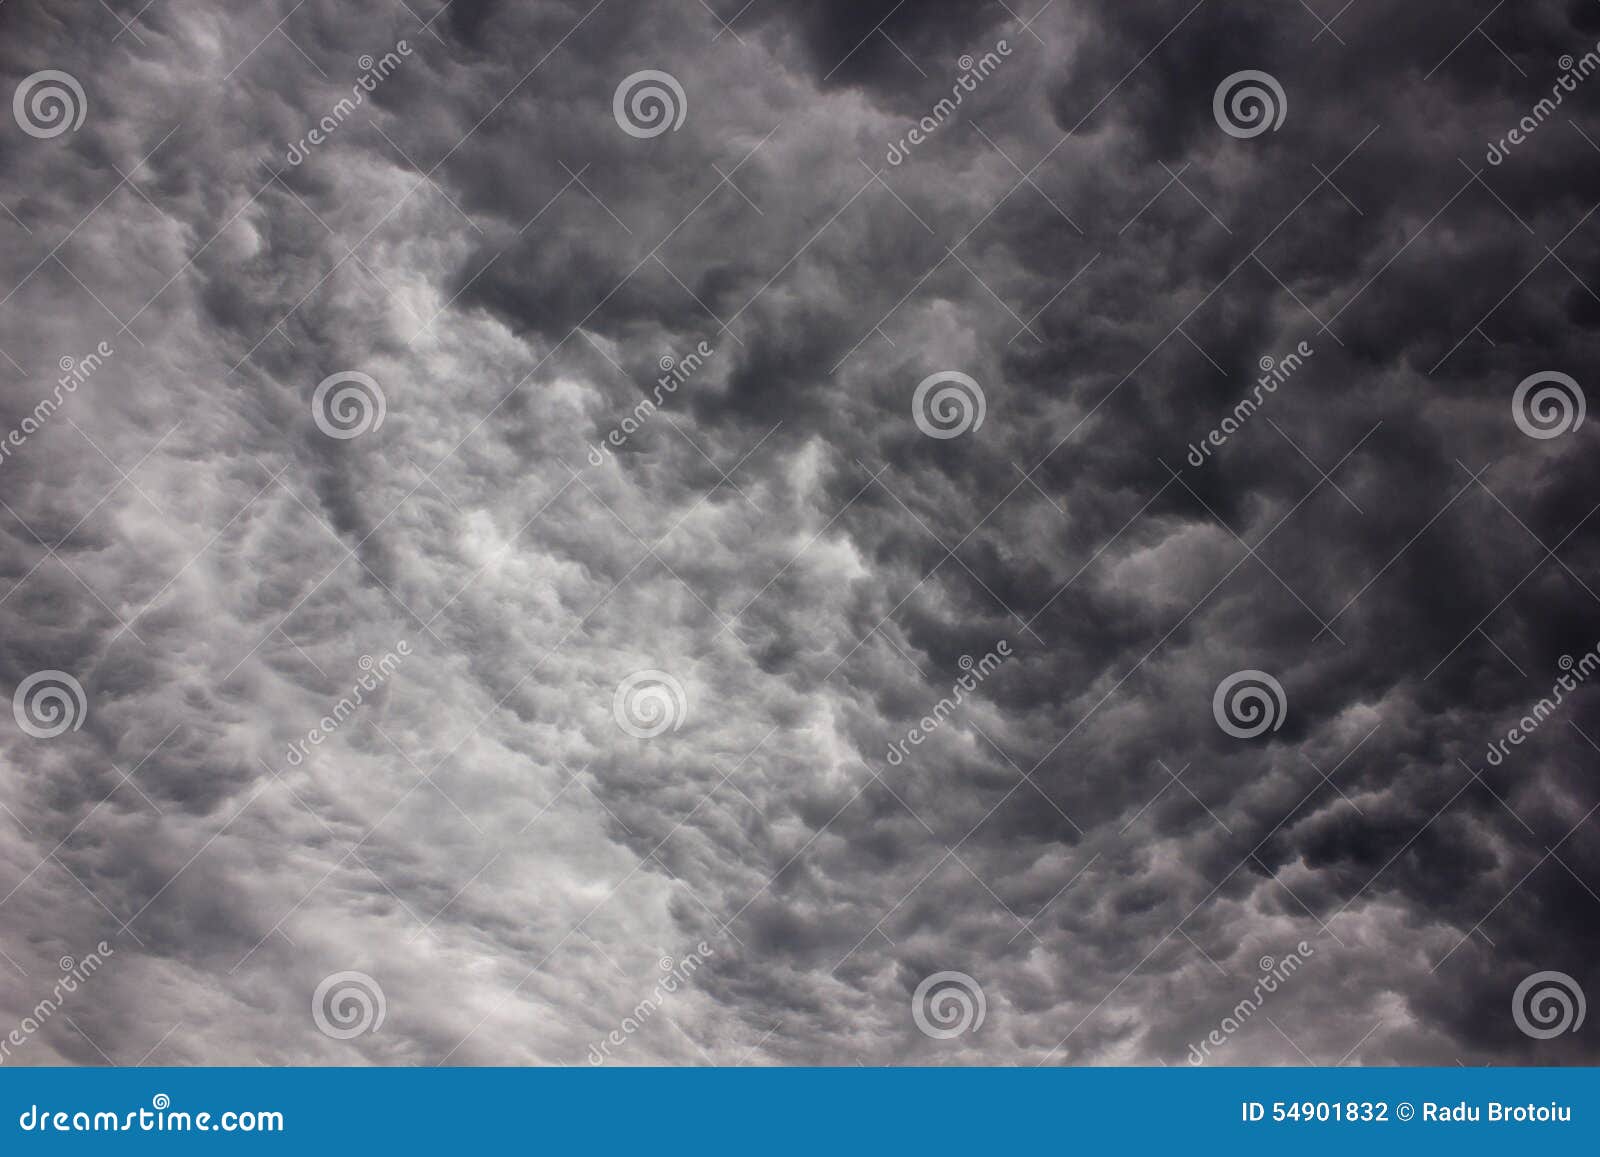 stratocumulus dark clouds